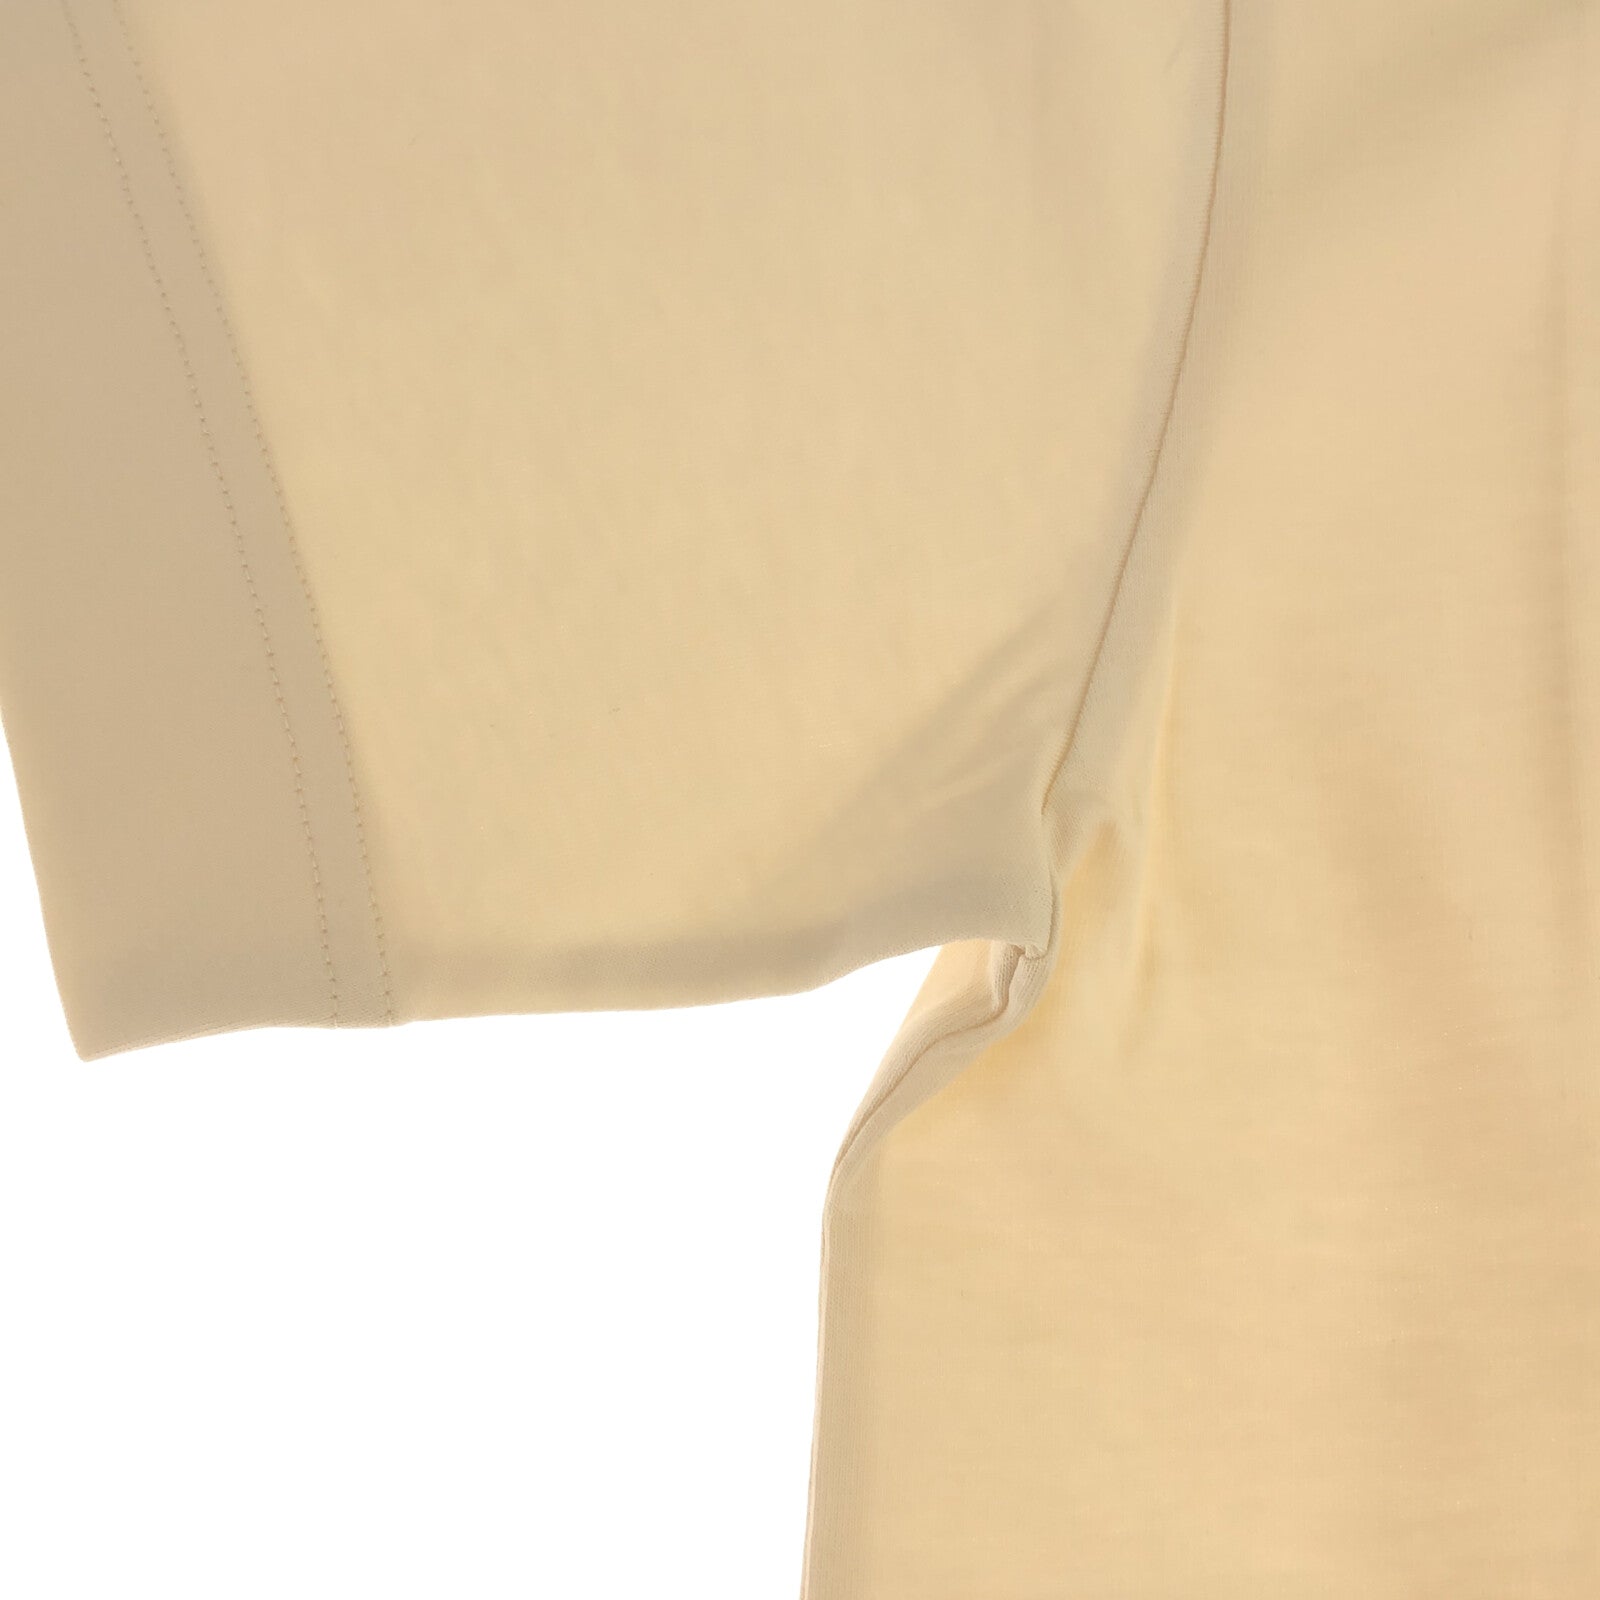 Moncler Moncler  Half-Hand   Tops Cotton  White 8C0003289AIJ060M